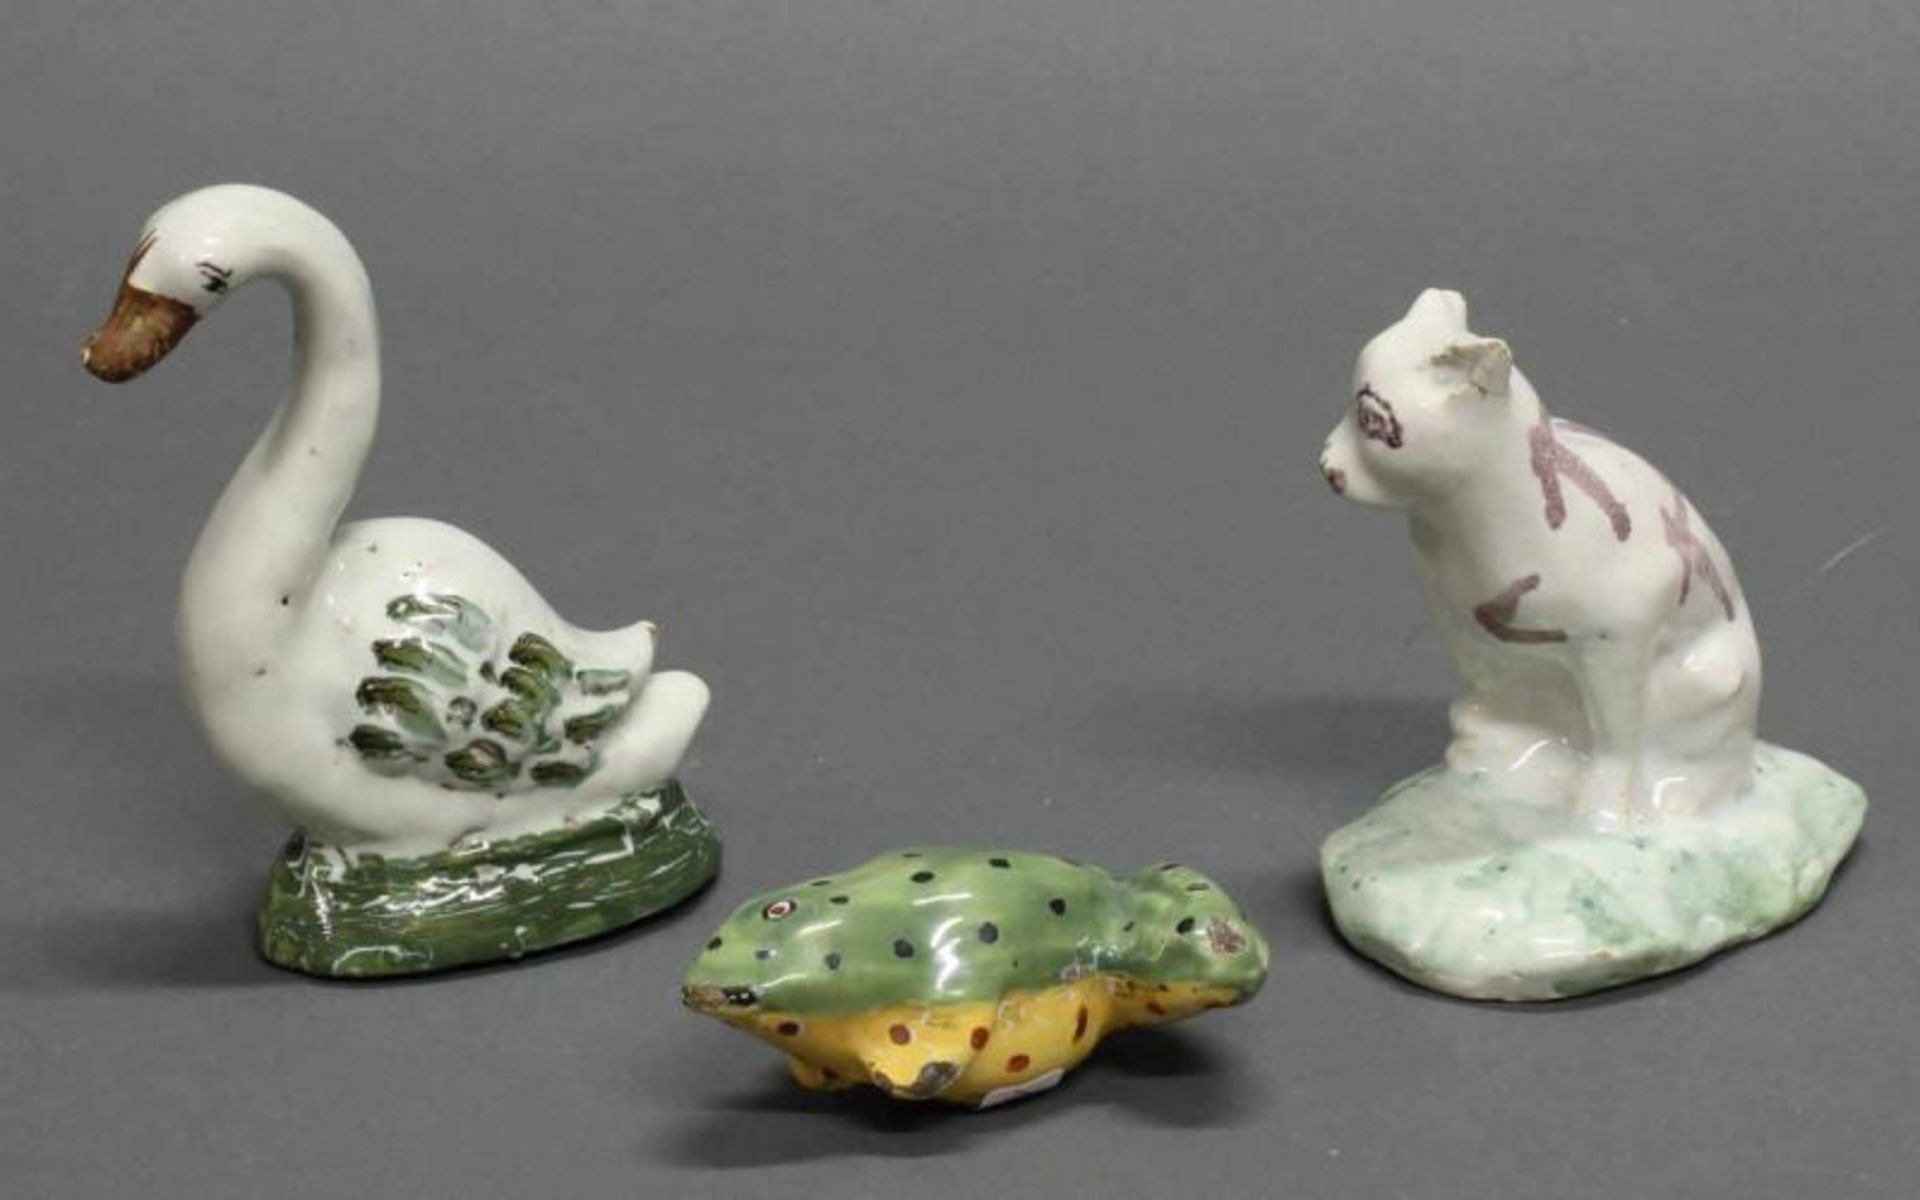 3 Fayencefiguren, "Schwan", "Frosch", "Katze", wohl Delft bzw. Brüssel (Katze), 18 Jh., ungemarkt, - Image 2 of 2